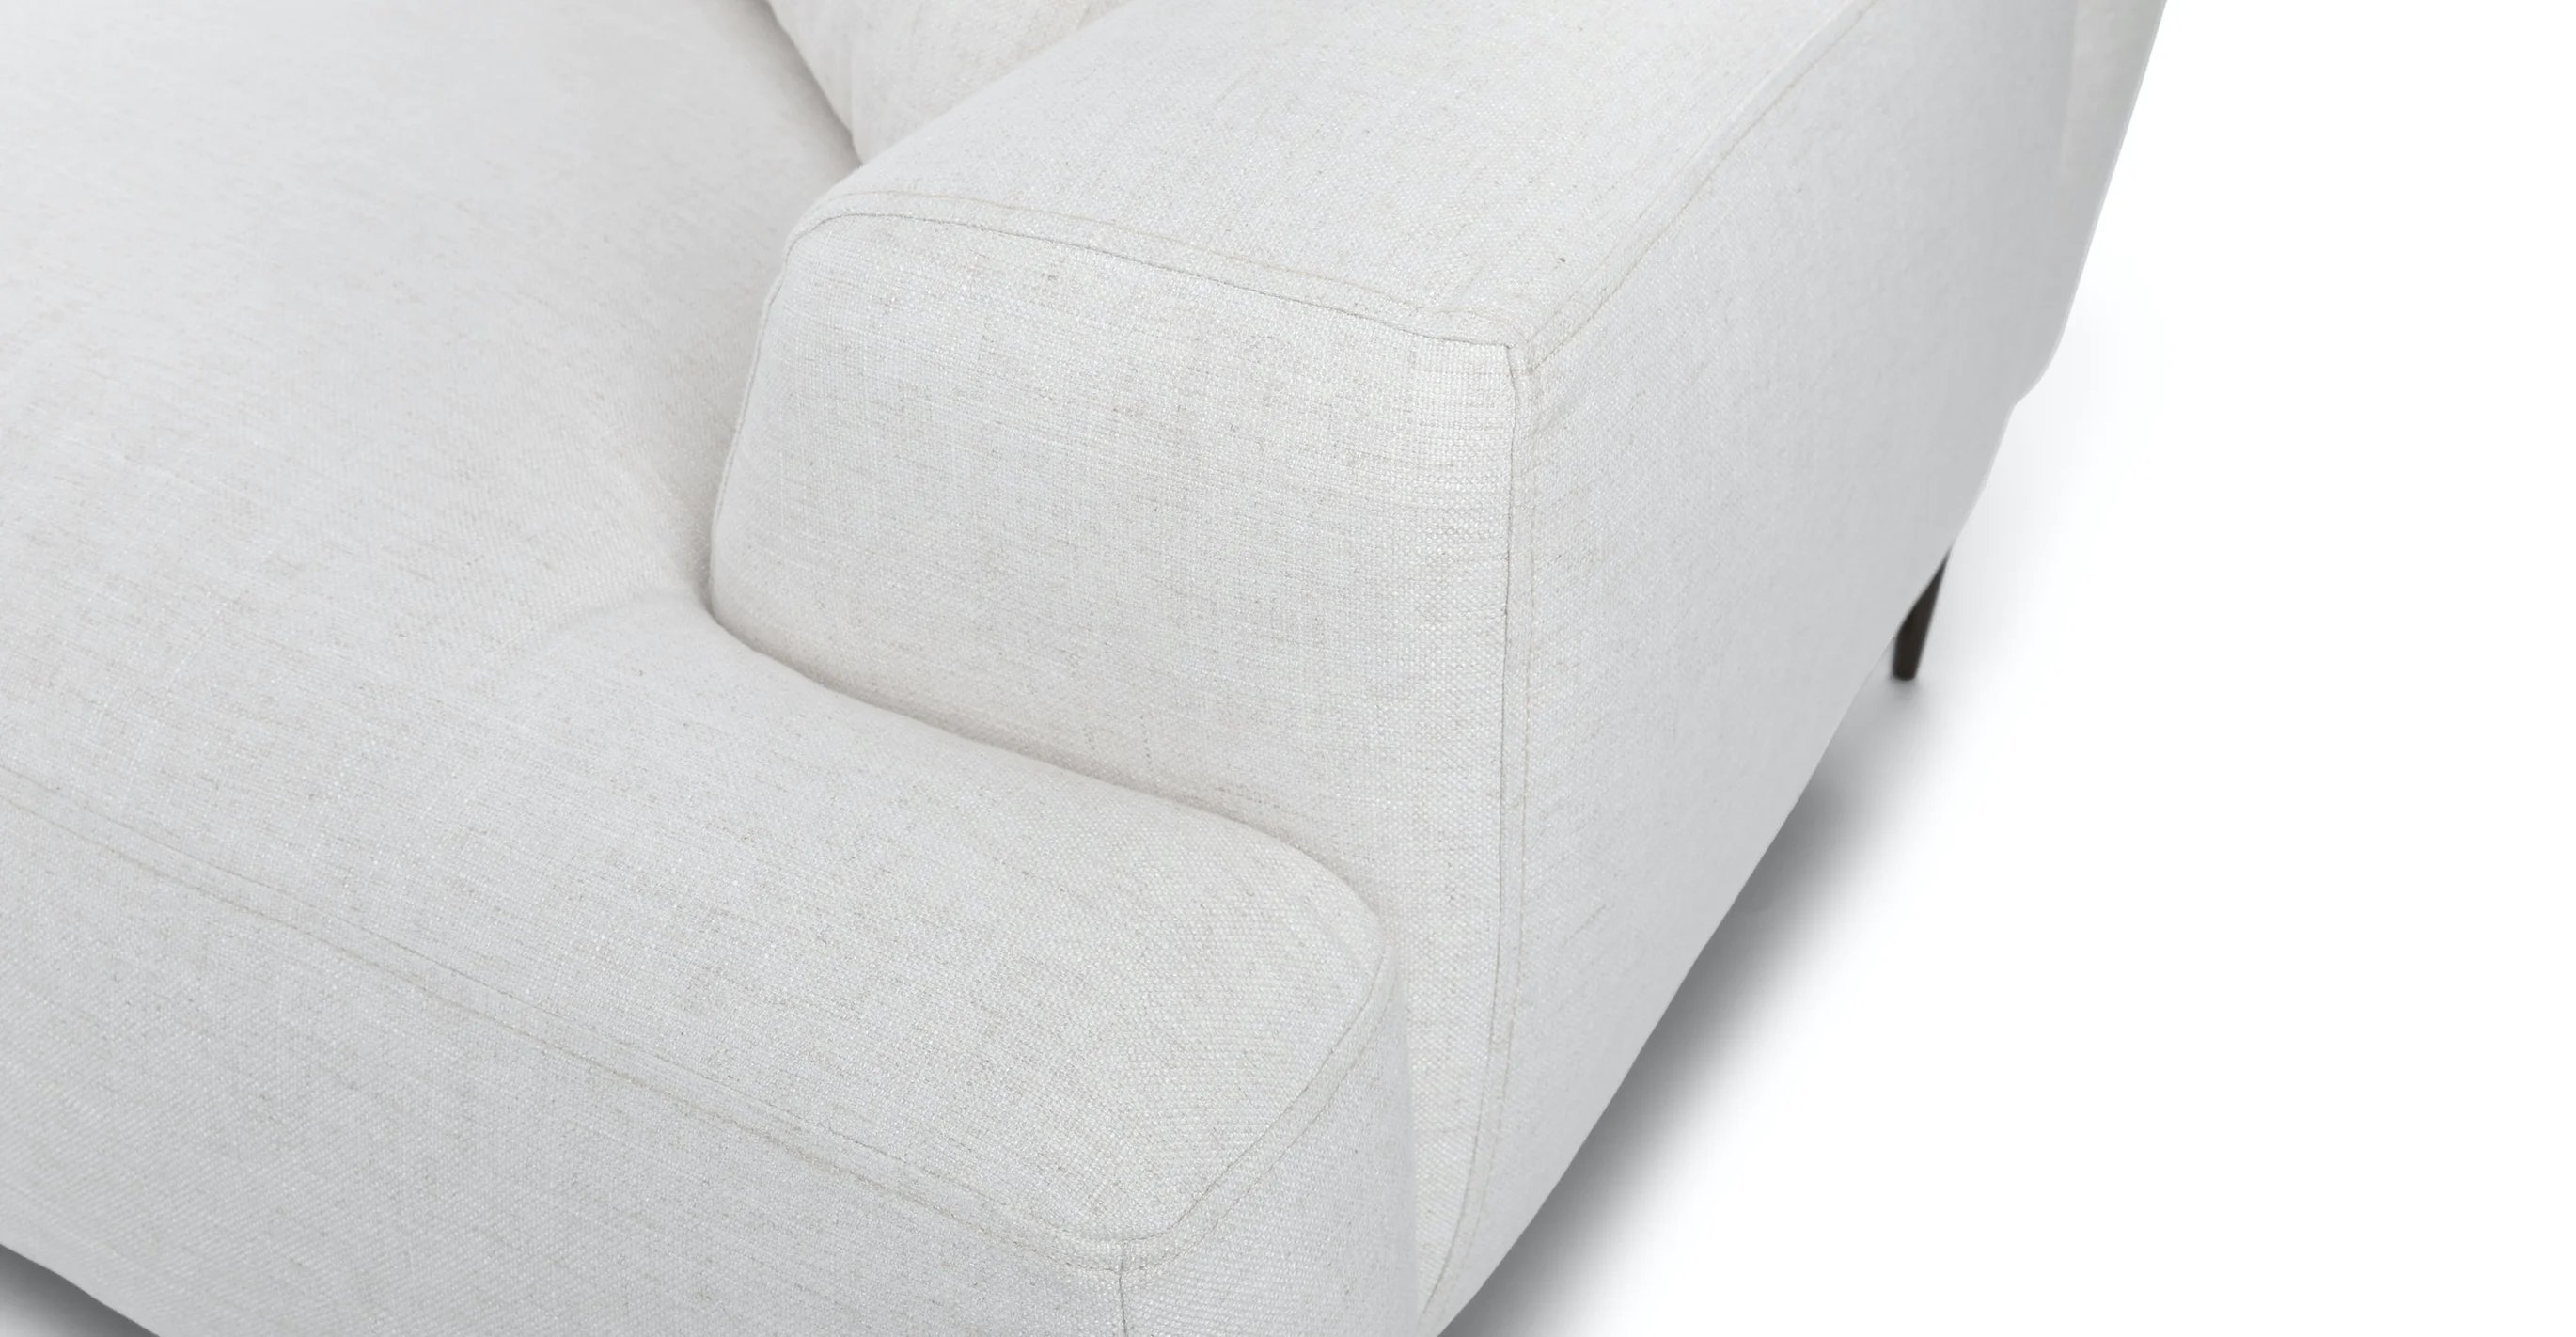 Abisko Quartz White Sofa - Image 7